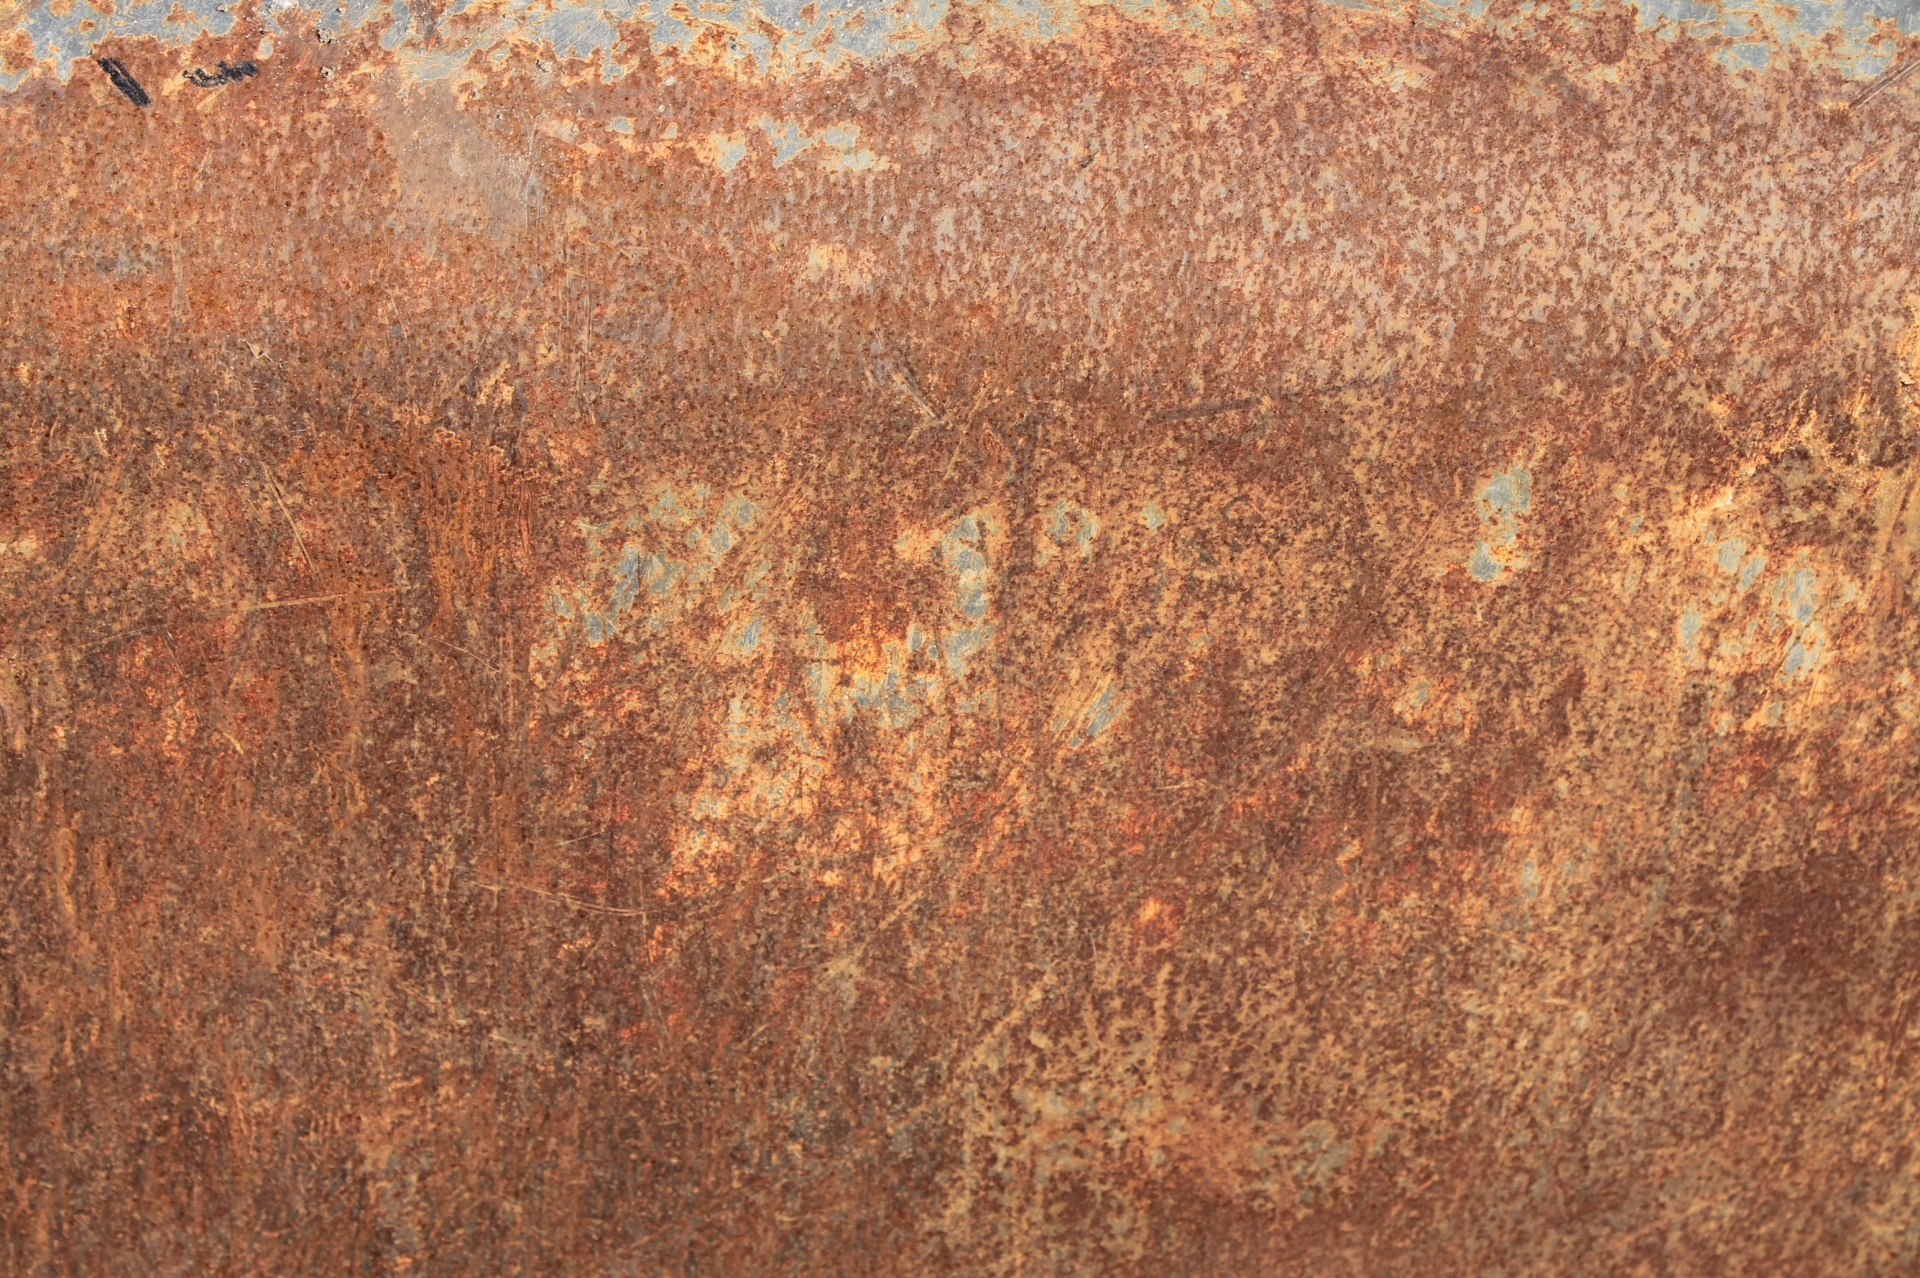 Copper rust цвет фото 89